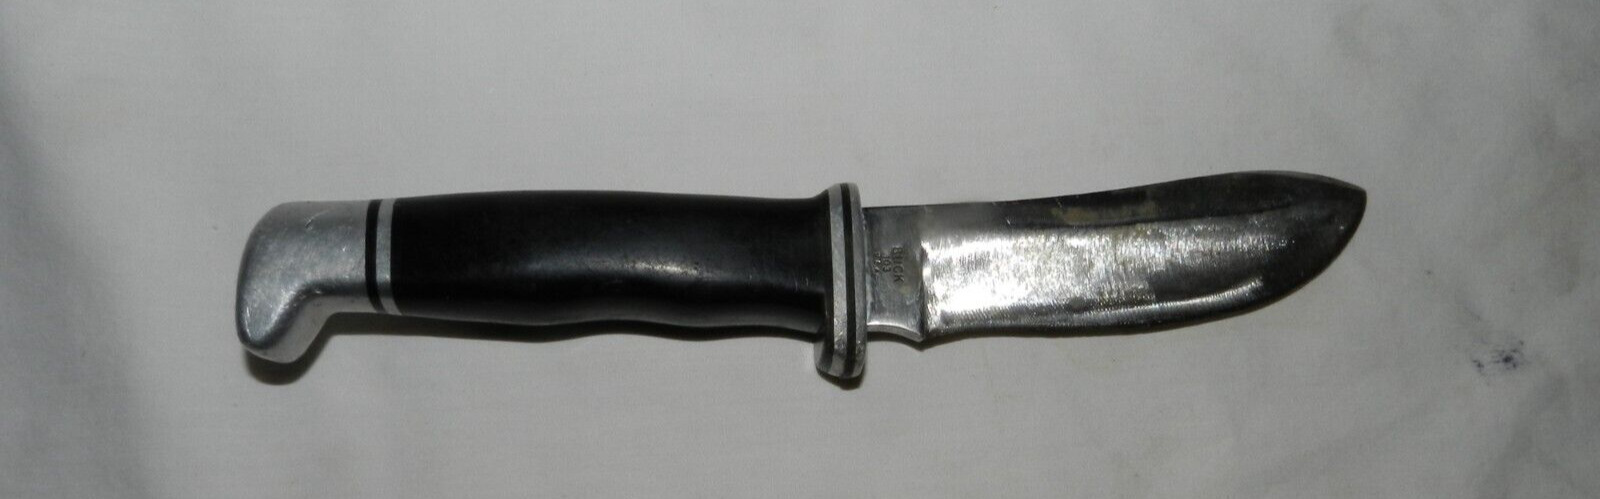 Vtg BUCK KNIVES USA 103 Skinner Fixed Blade Hunting Knife 1972 - 1986